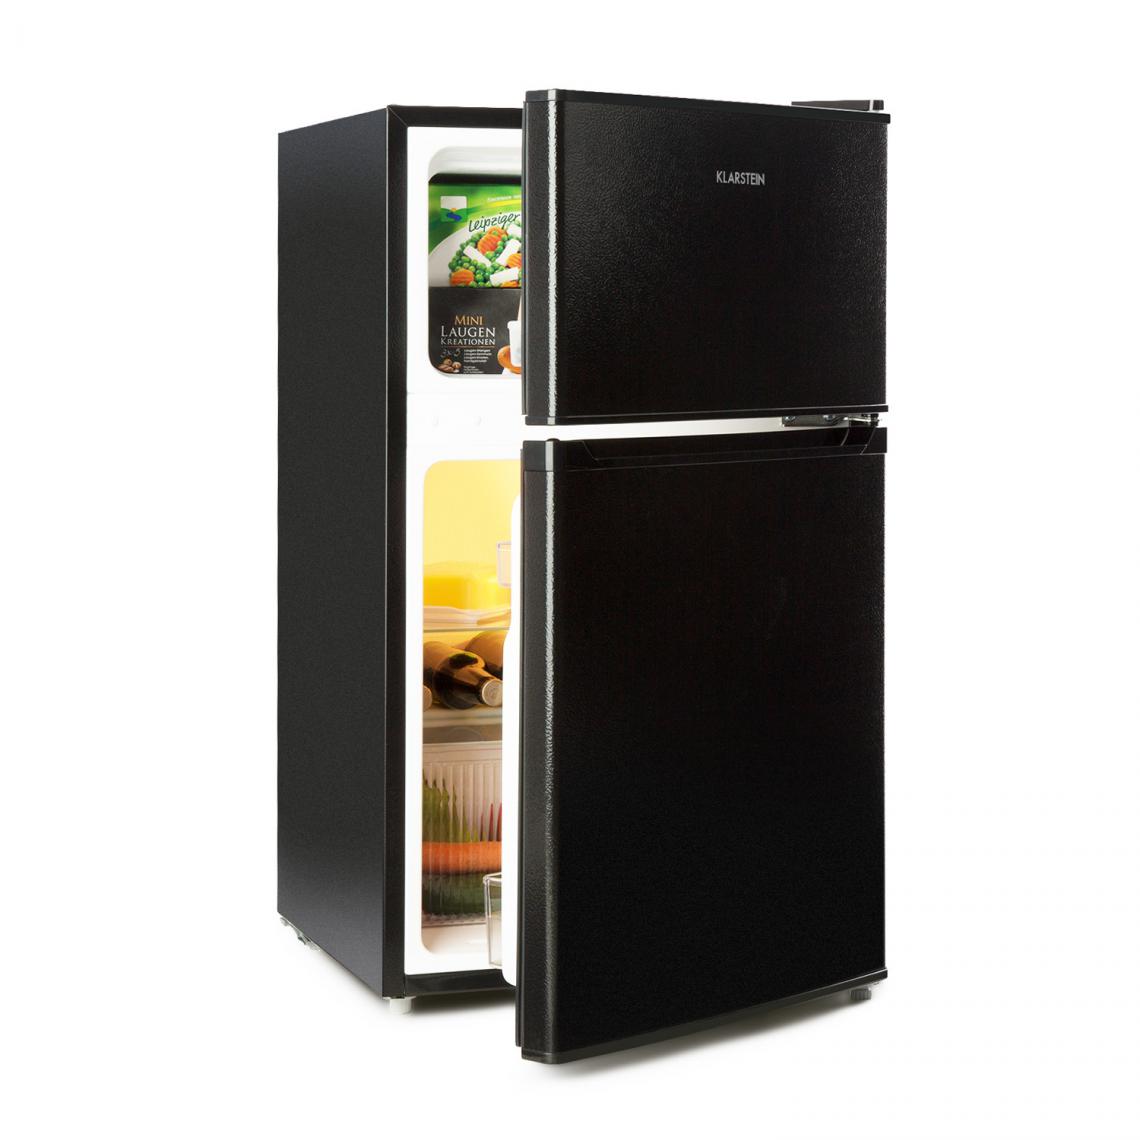 Klarstein - Réfrigérateur congélateur - Klarstein Big Daddy Cool - 4*, 87 litres (61+26), 42 dB - Noir - Réfrigérateur